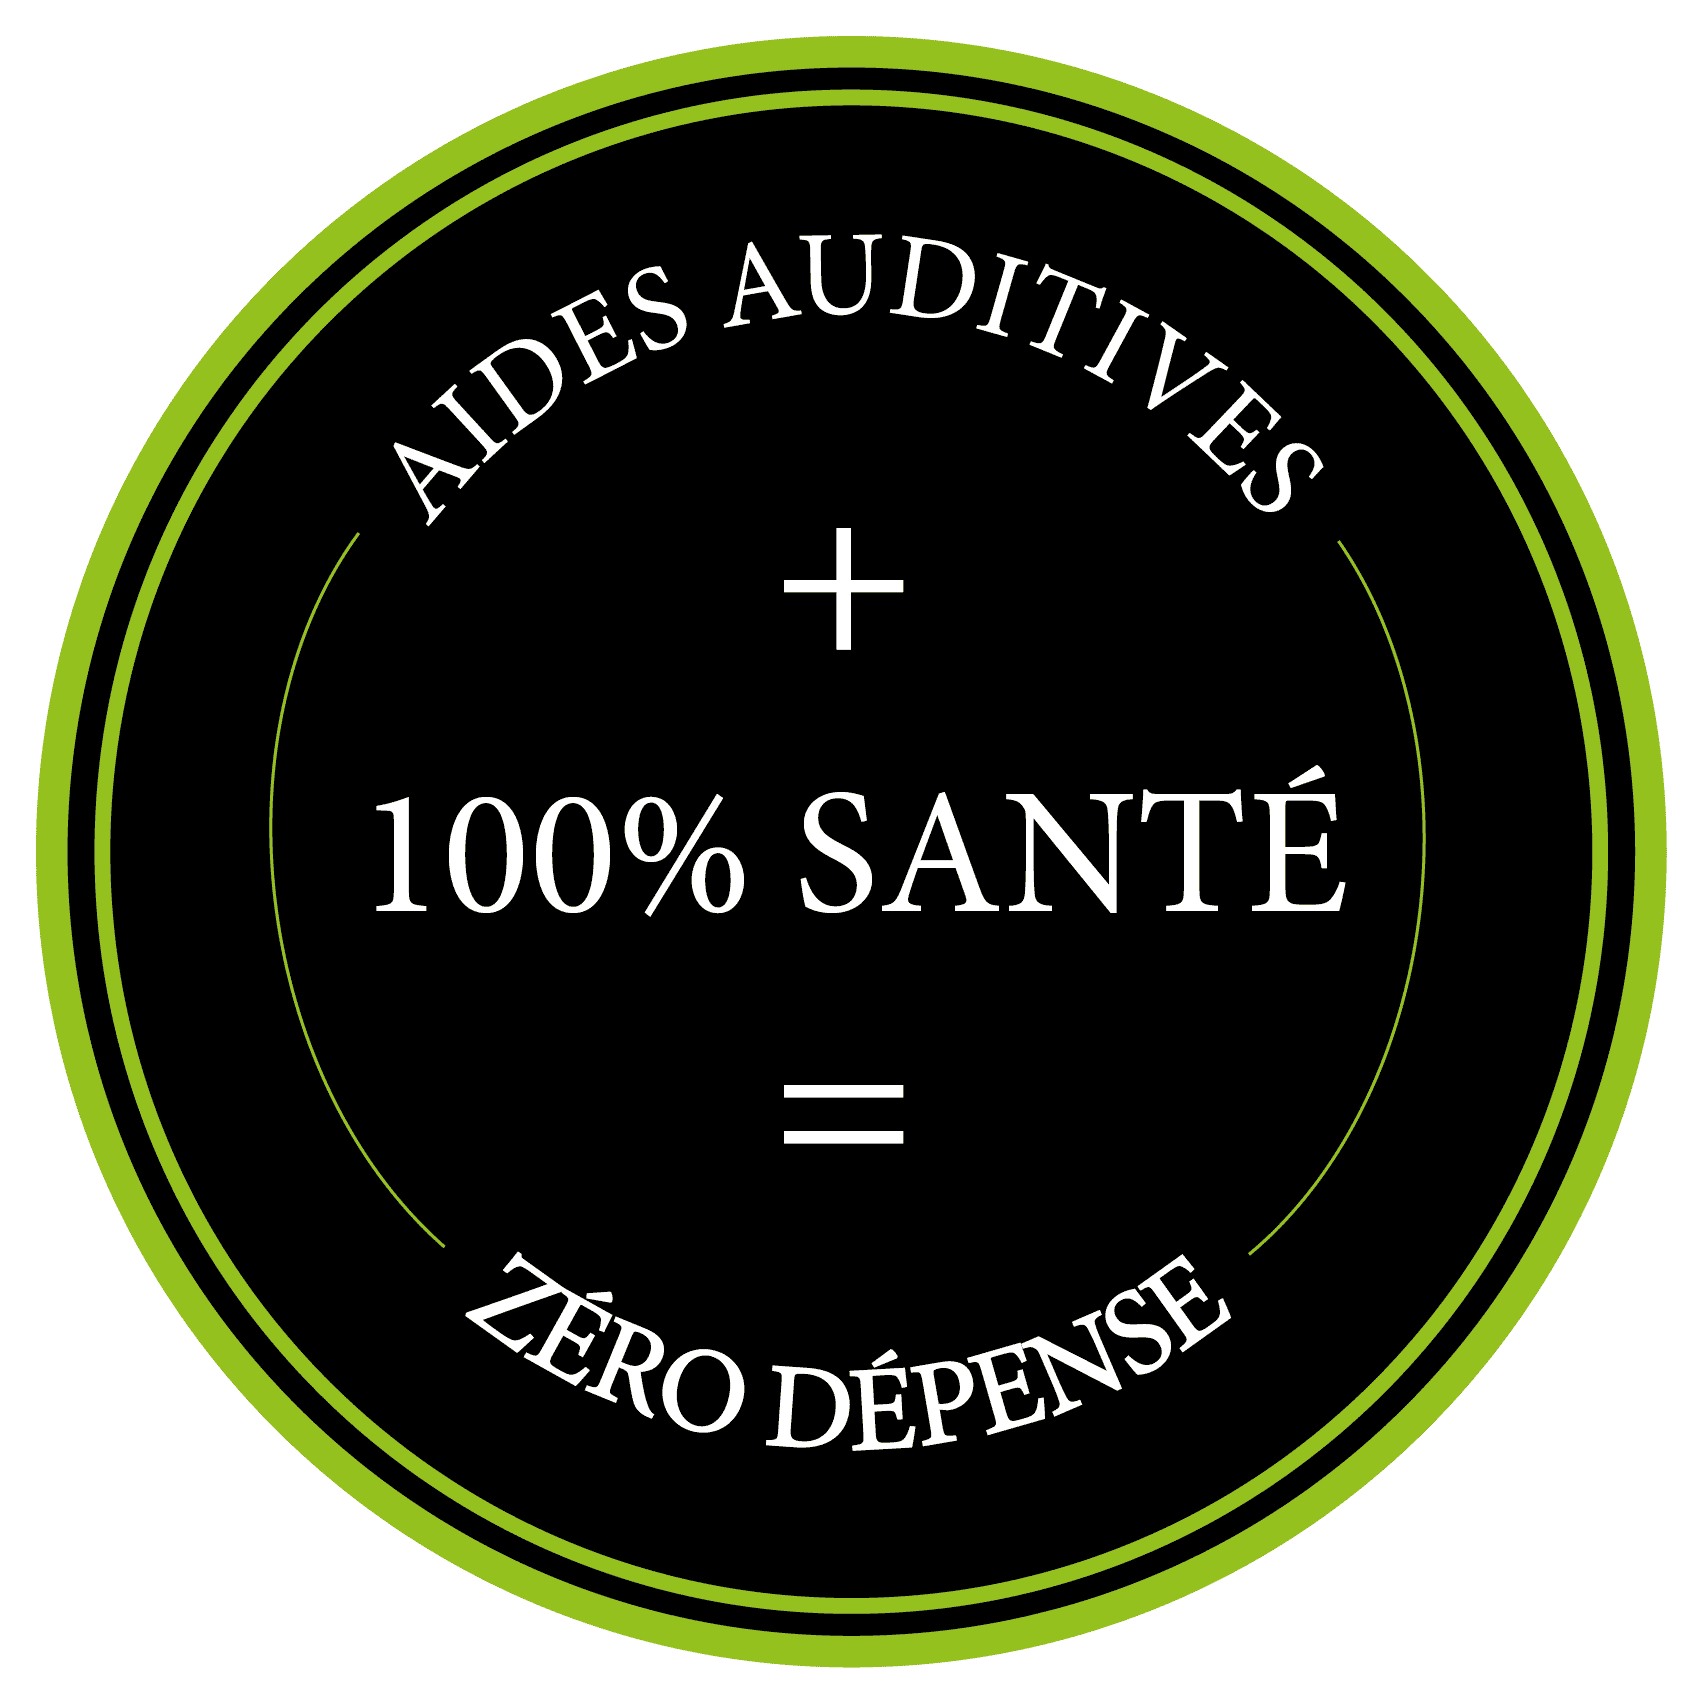 PATCH AUDIO 100 SANTE - Aide auditive